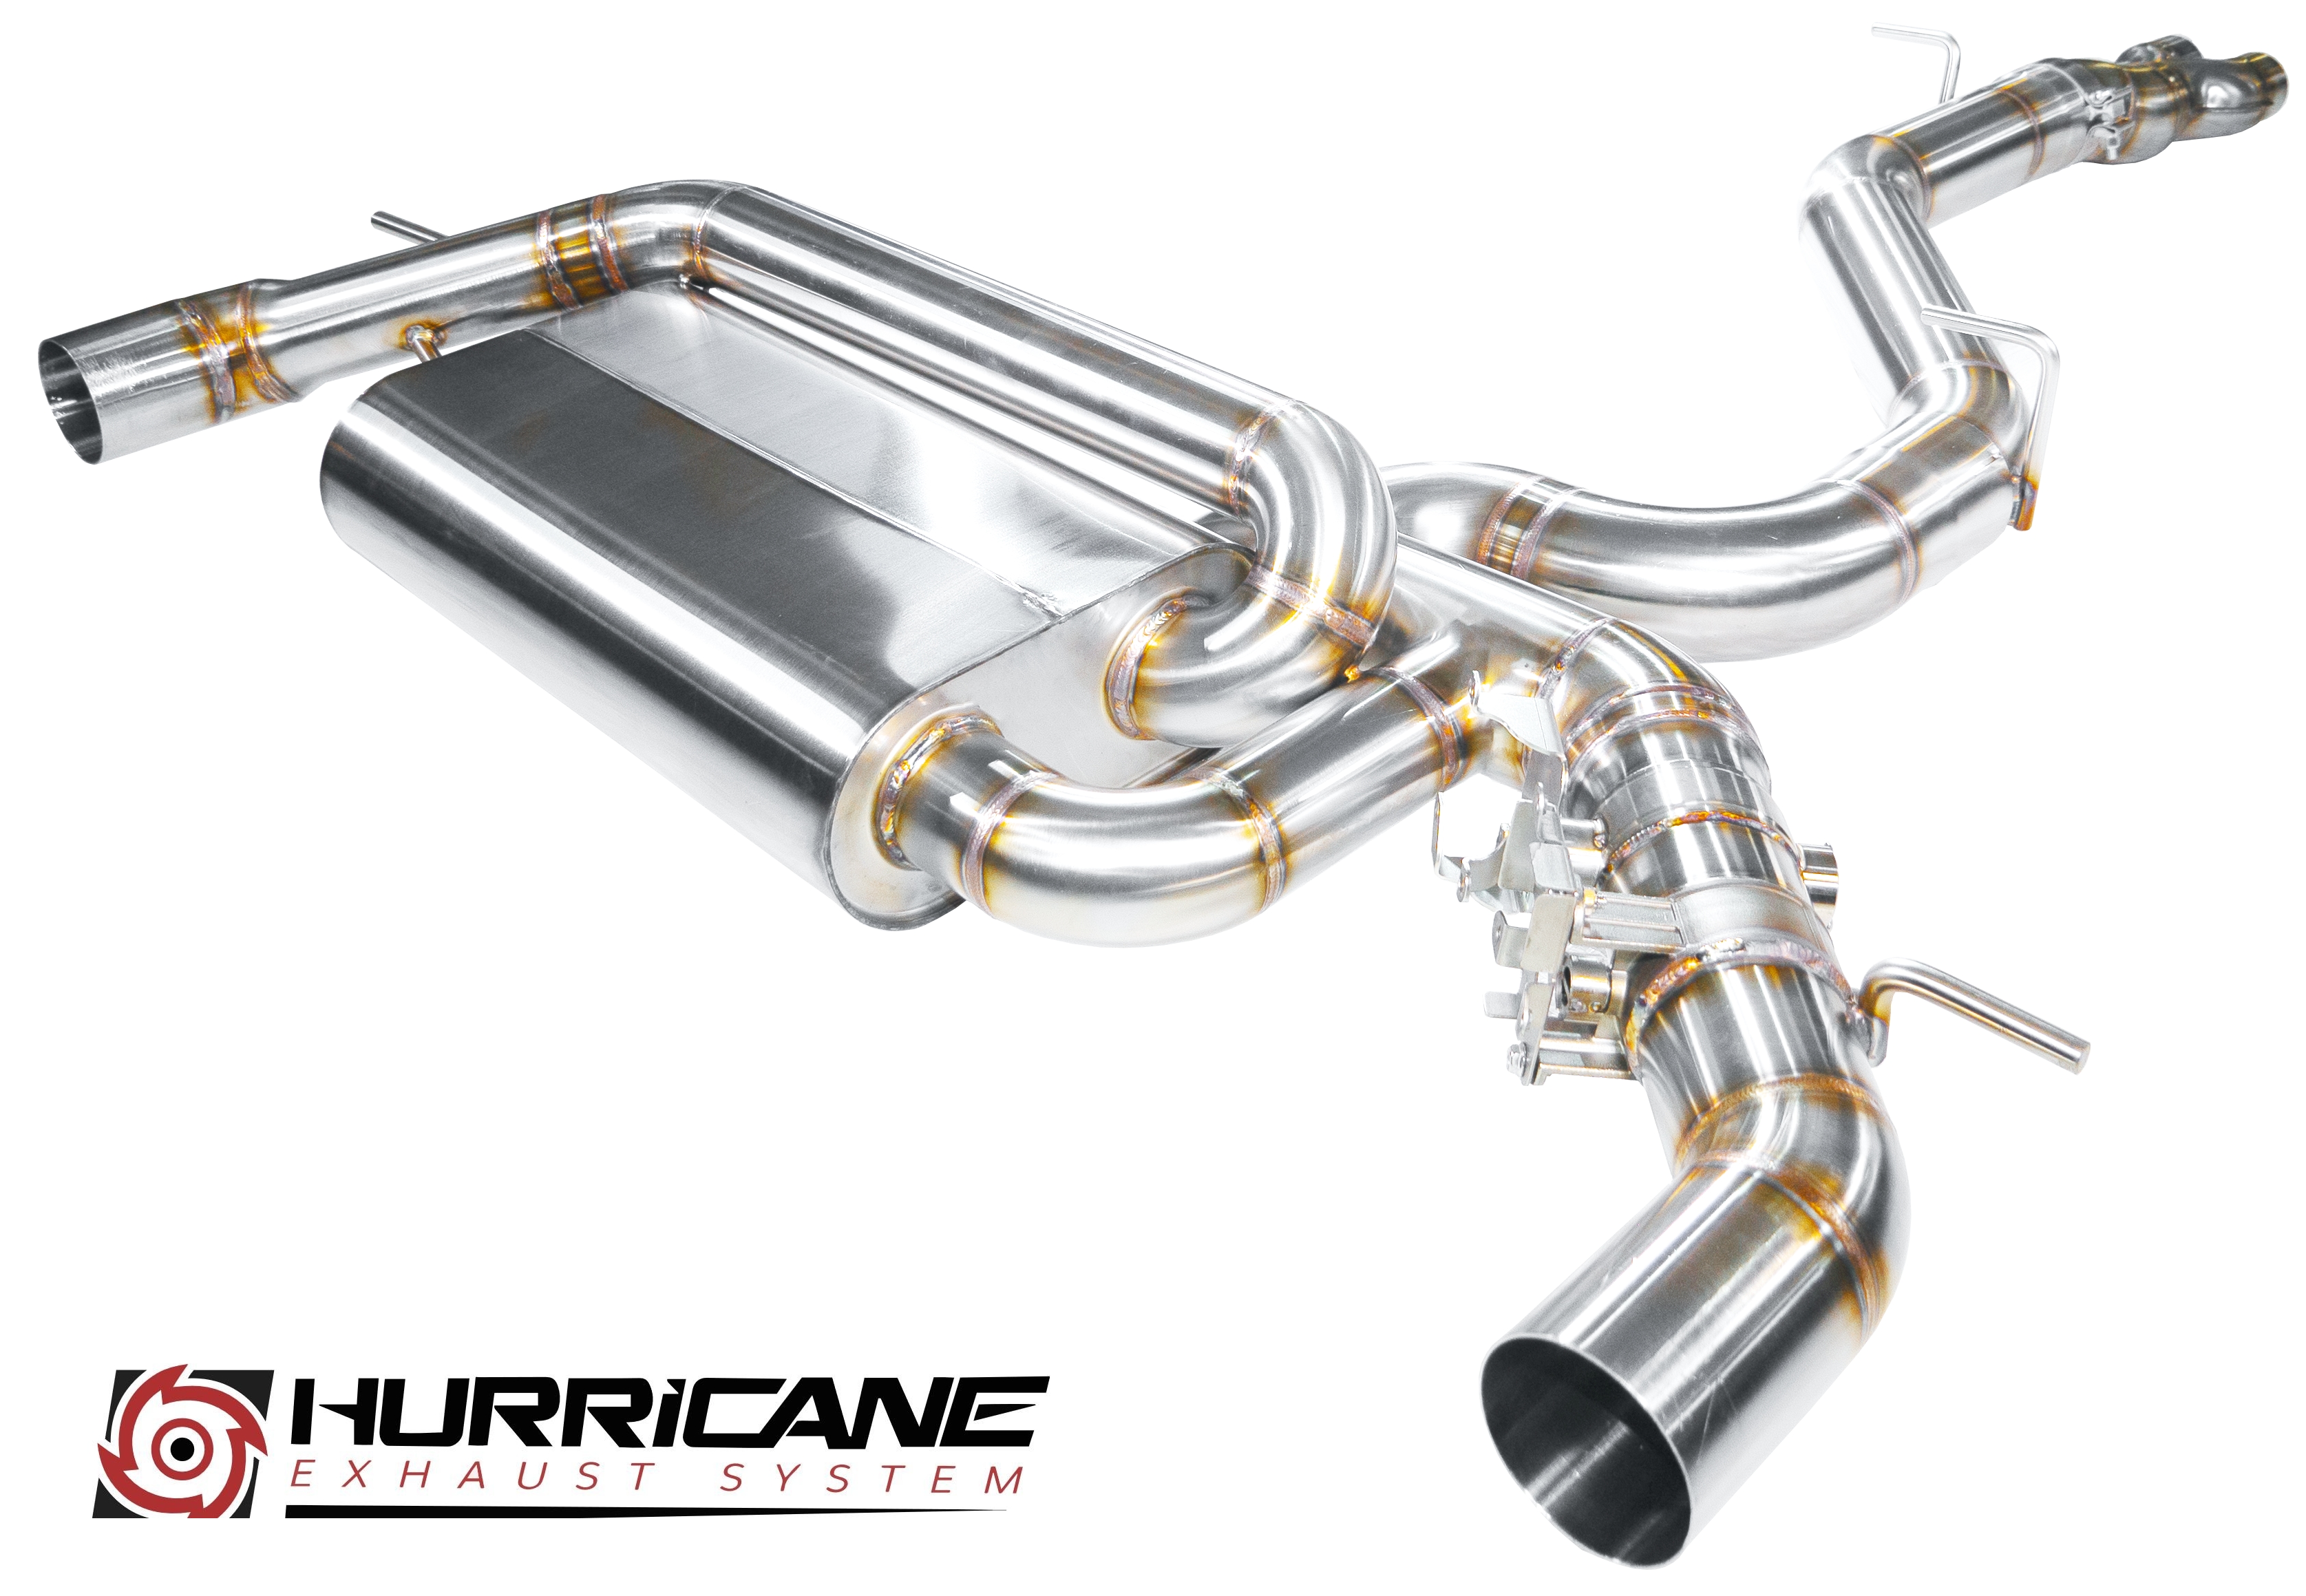 Hurricane 3,5" Abgasanlage für Audi TT RS 8S nonOPF